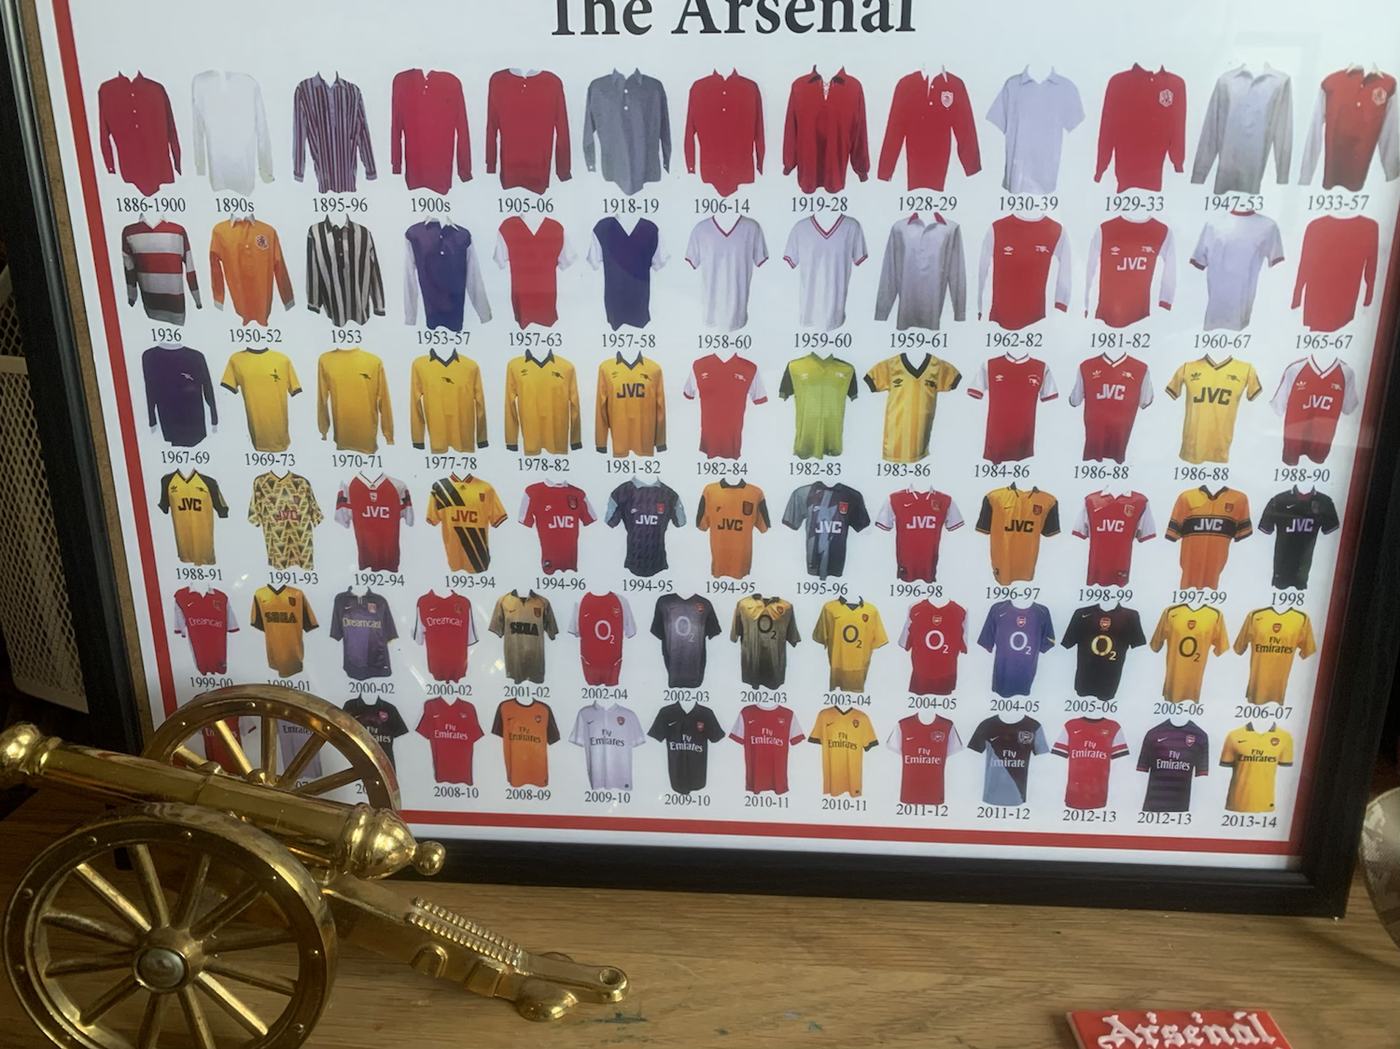 "The Arsenal" Framed Print